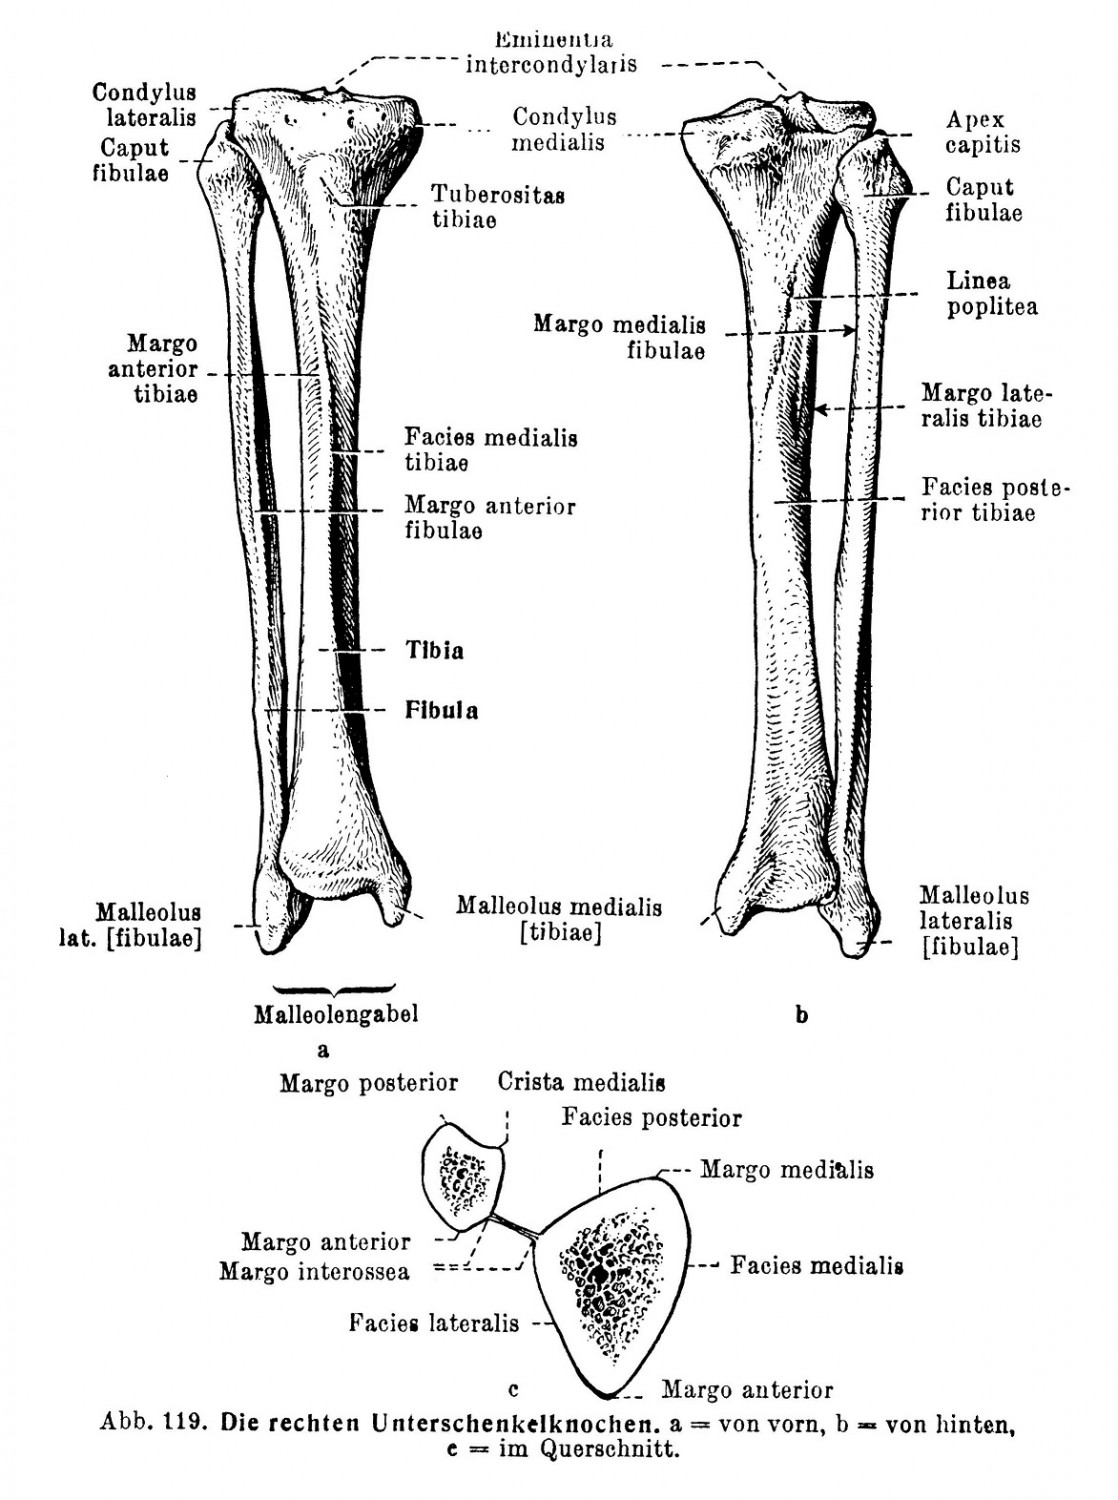 Die rechten Unterschenkelknochen